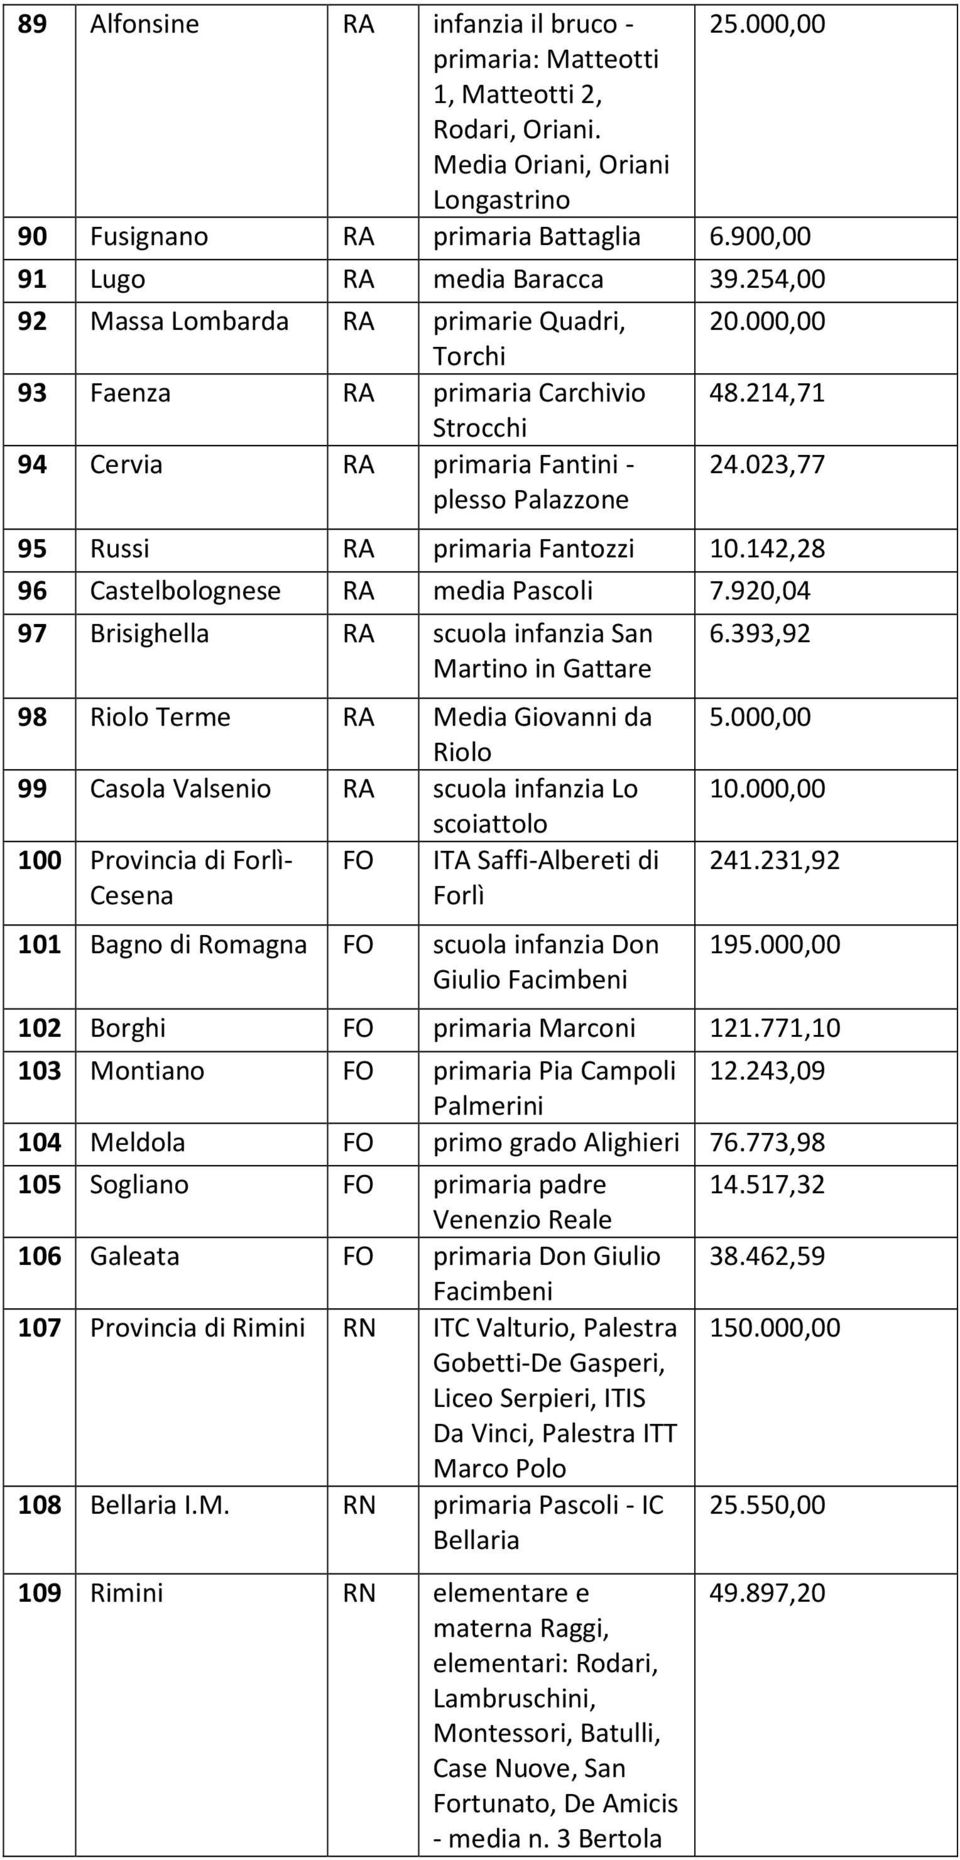 023,77 95 Russi RA primaria Fantozzi 10.142,28 96 Castelbolognese RA media Pascoli 7.